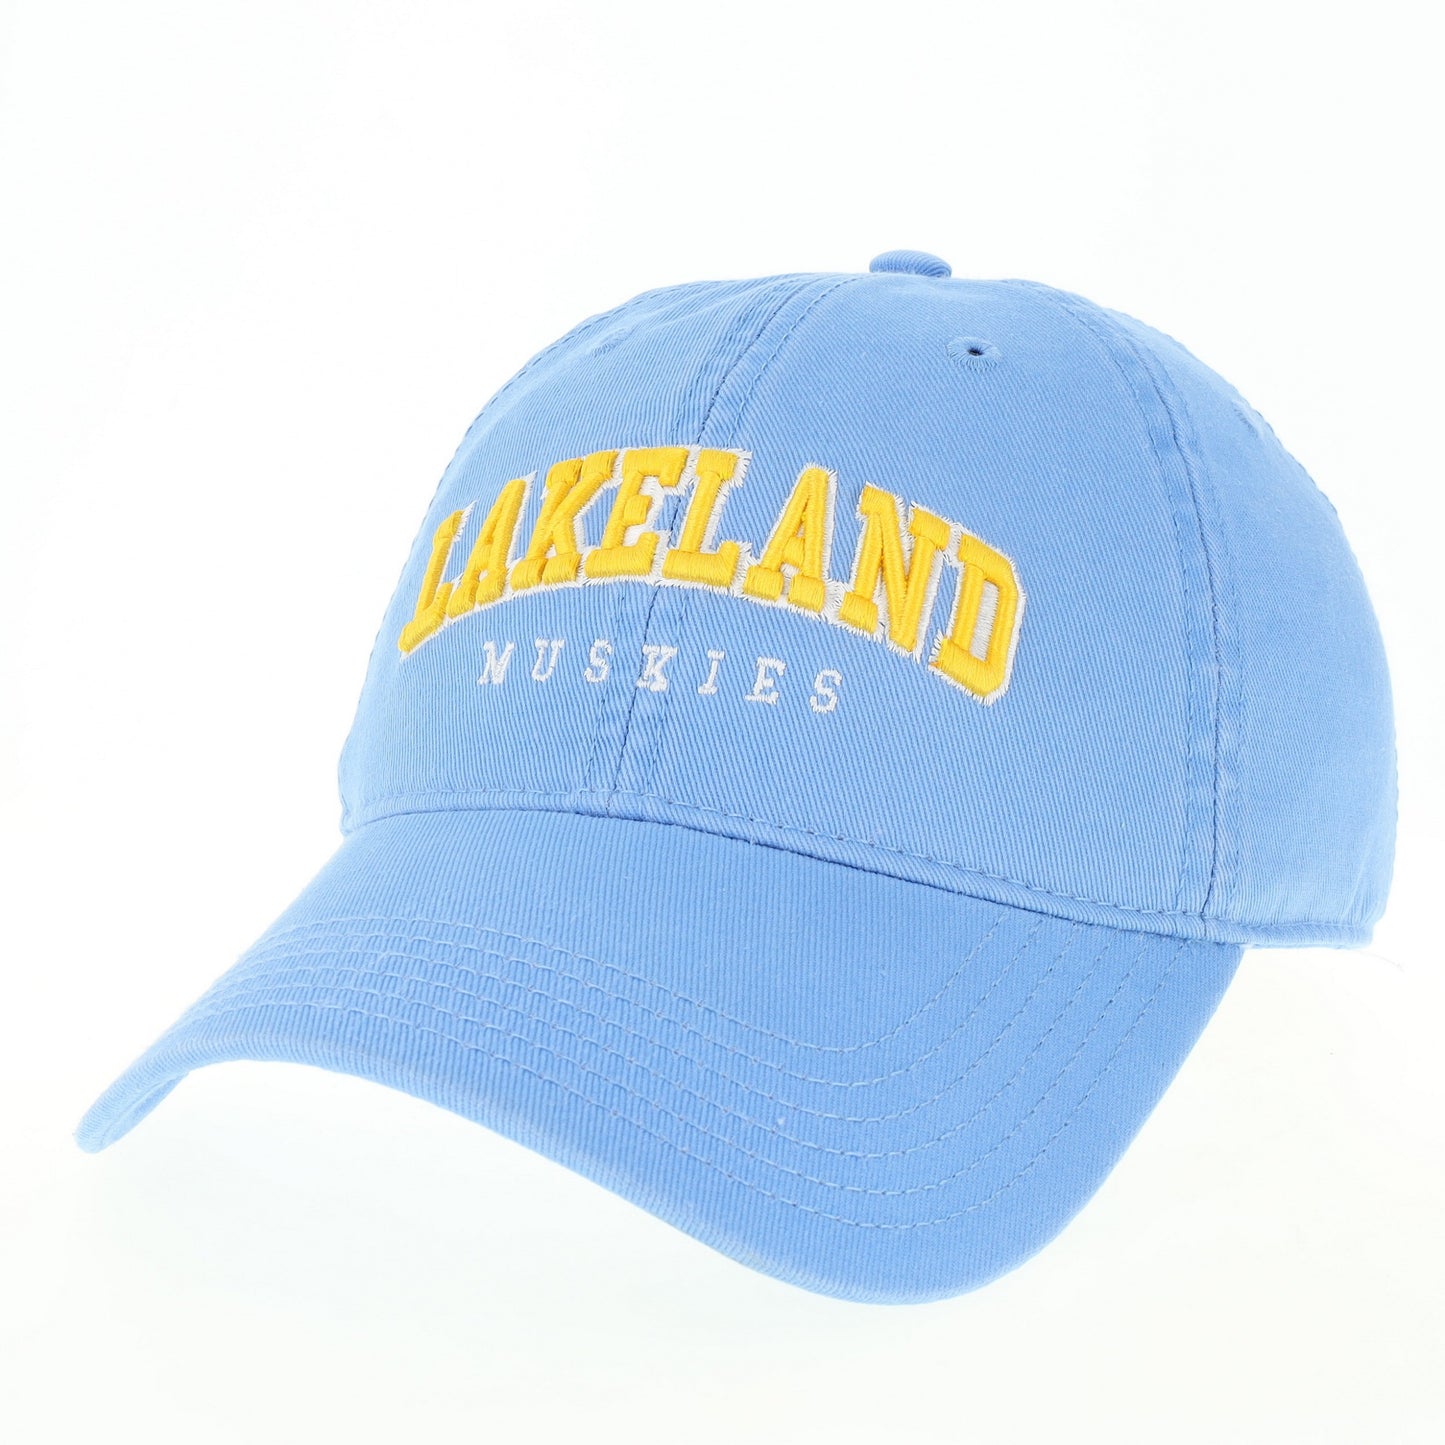 Baseball Cap Lakeland Muskies